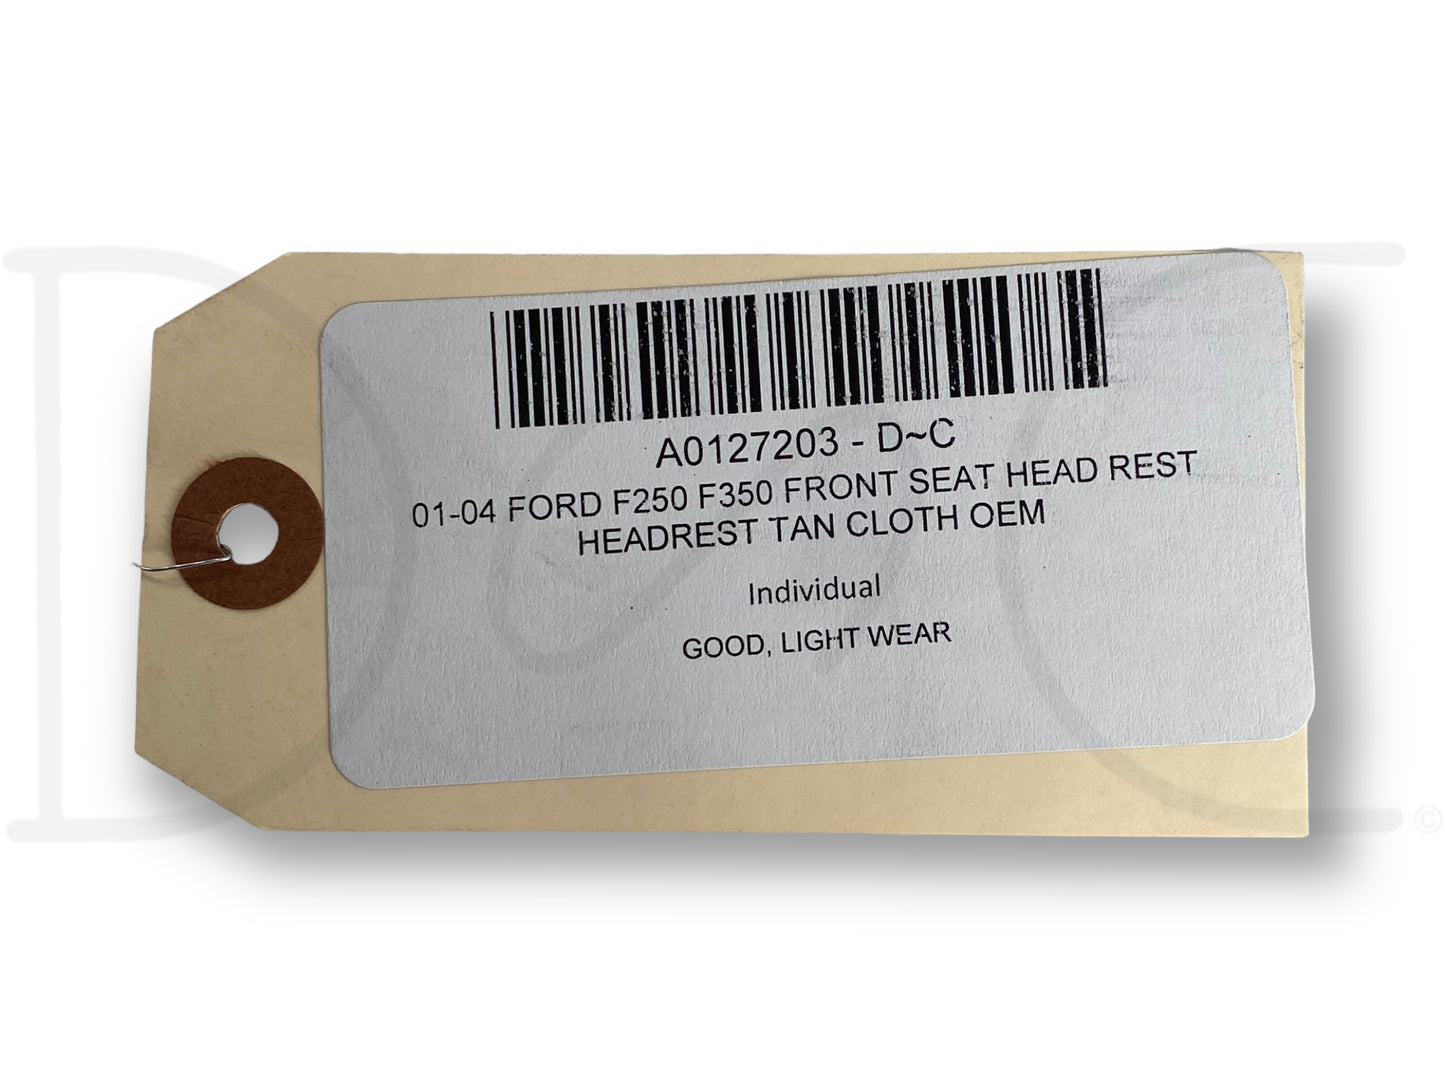 01-04 Ford F250 F350 Front Seat Head Rest Headrest Tan Cloth OEM